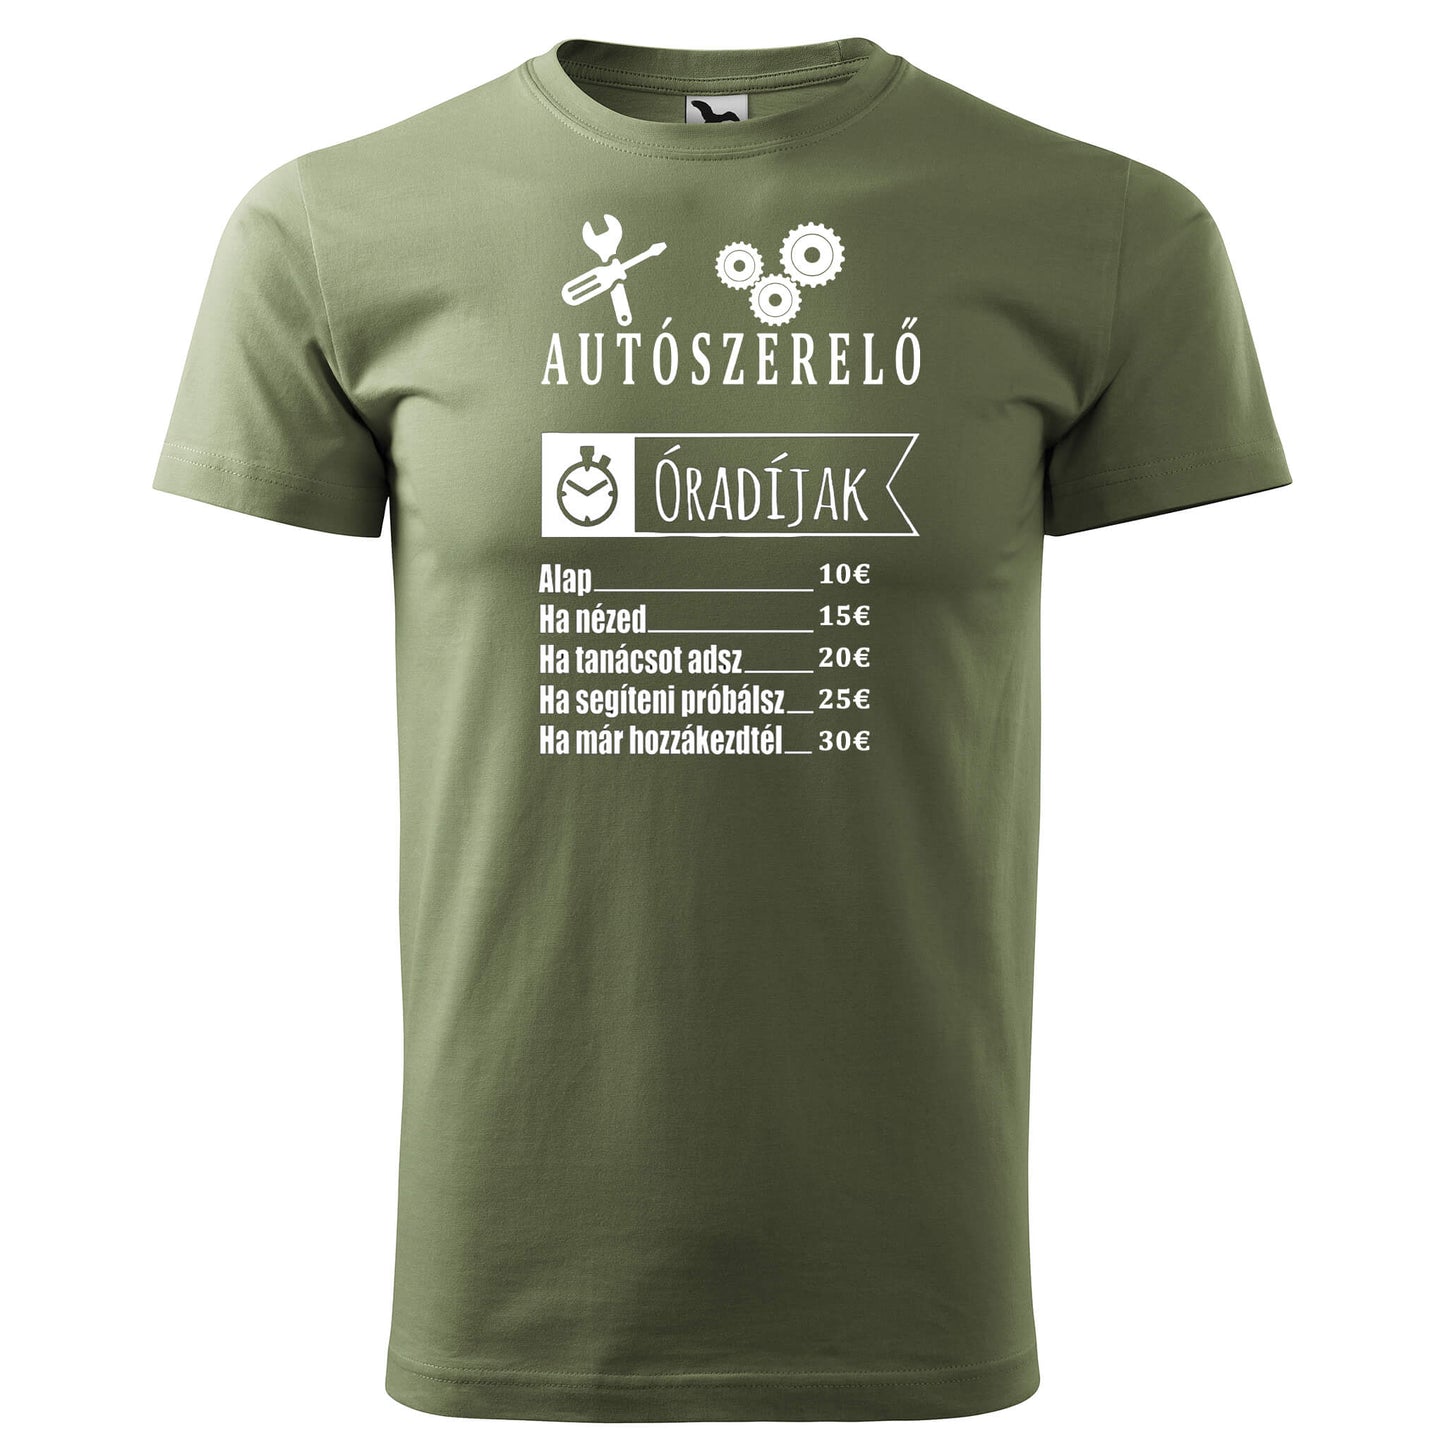 T-shirt - Autószerelő óradíjak - rvdesignprint